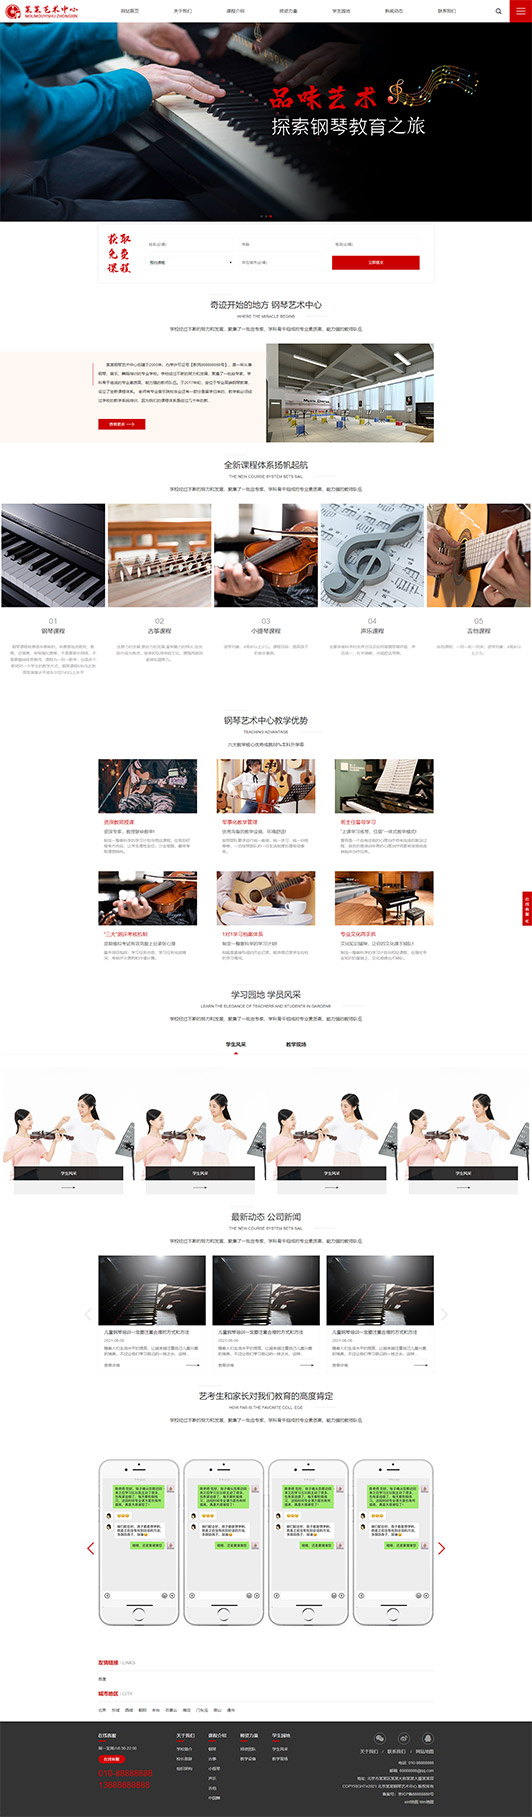 鹤岗钢琴艺术培训公司响应式企业网站